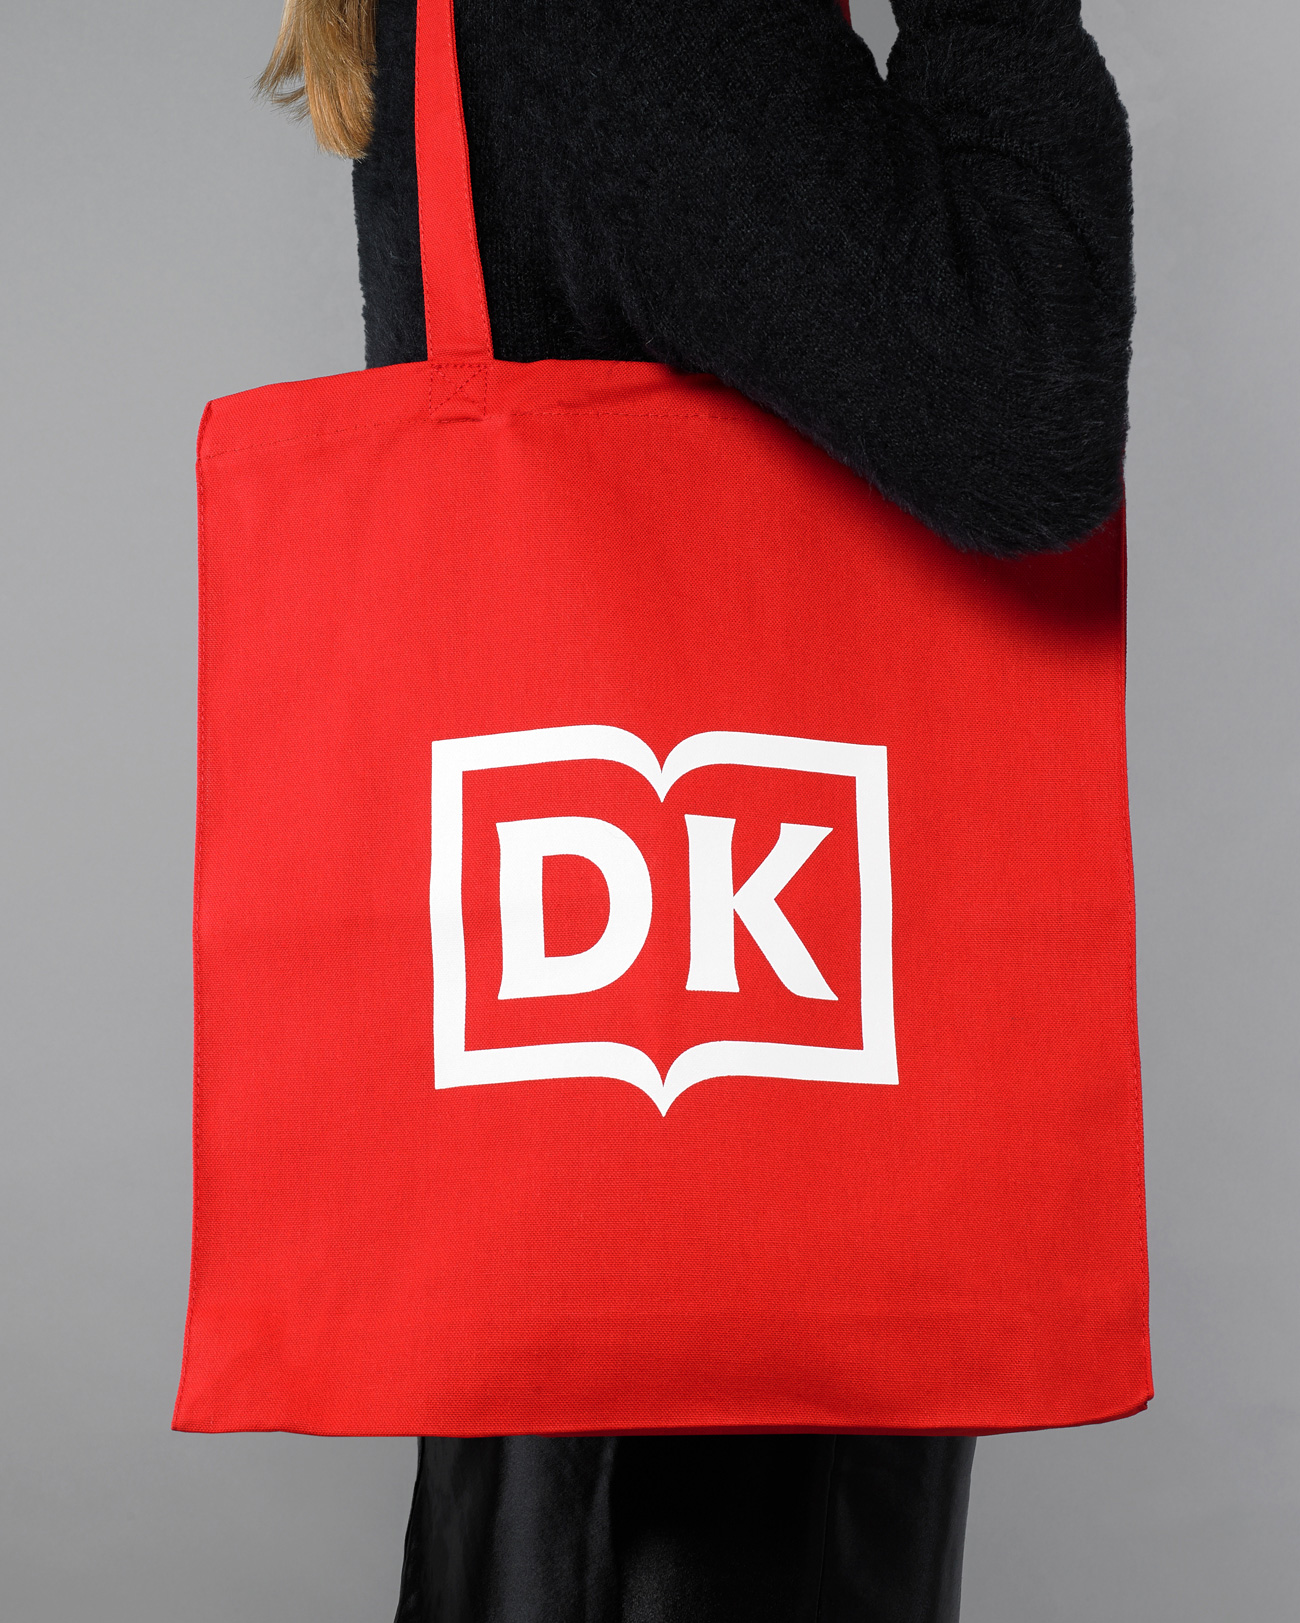 New Logo for DK by Pentagram